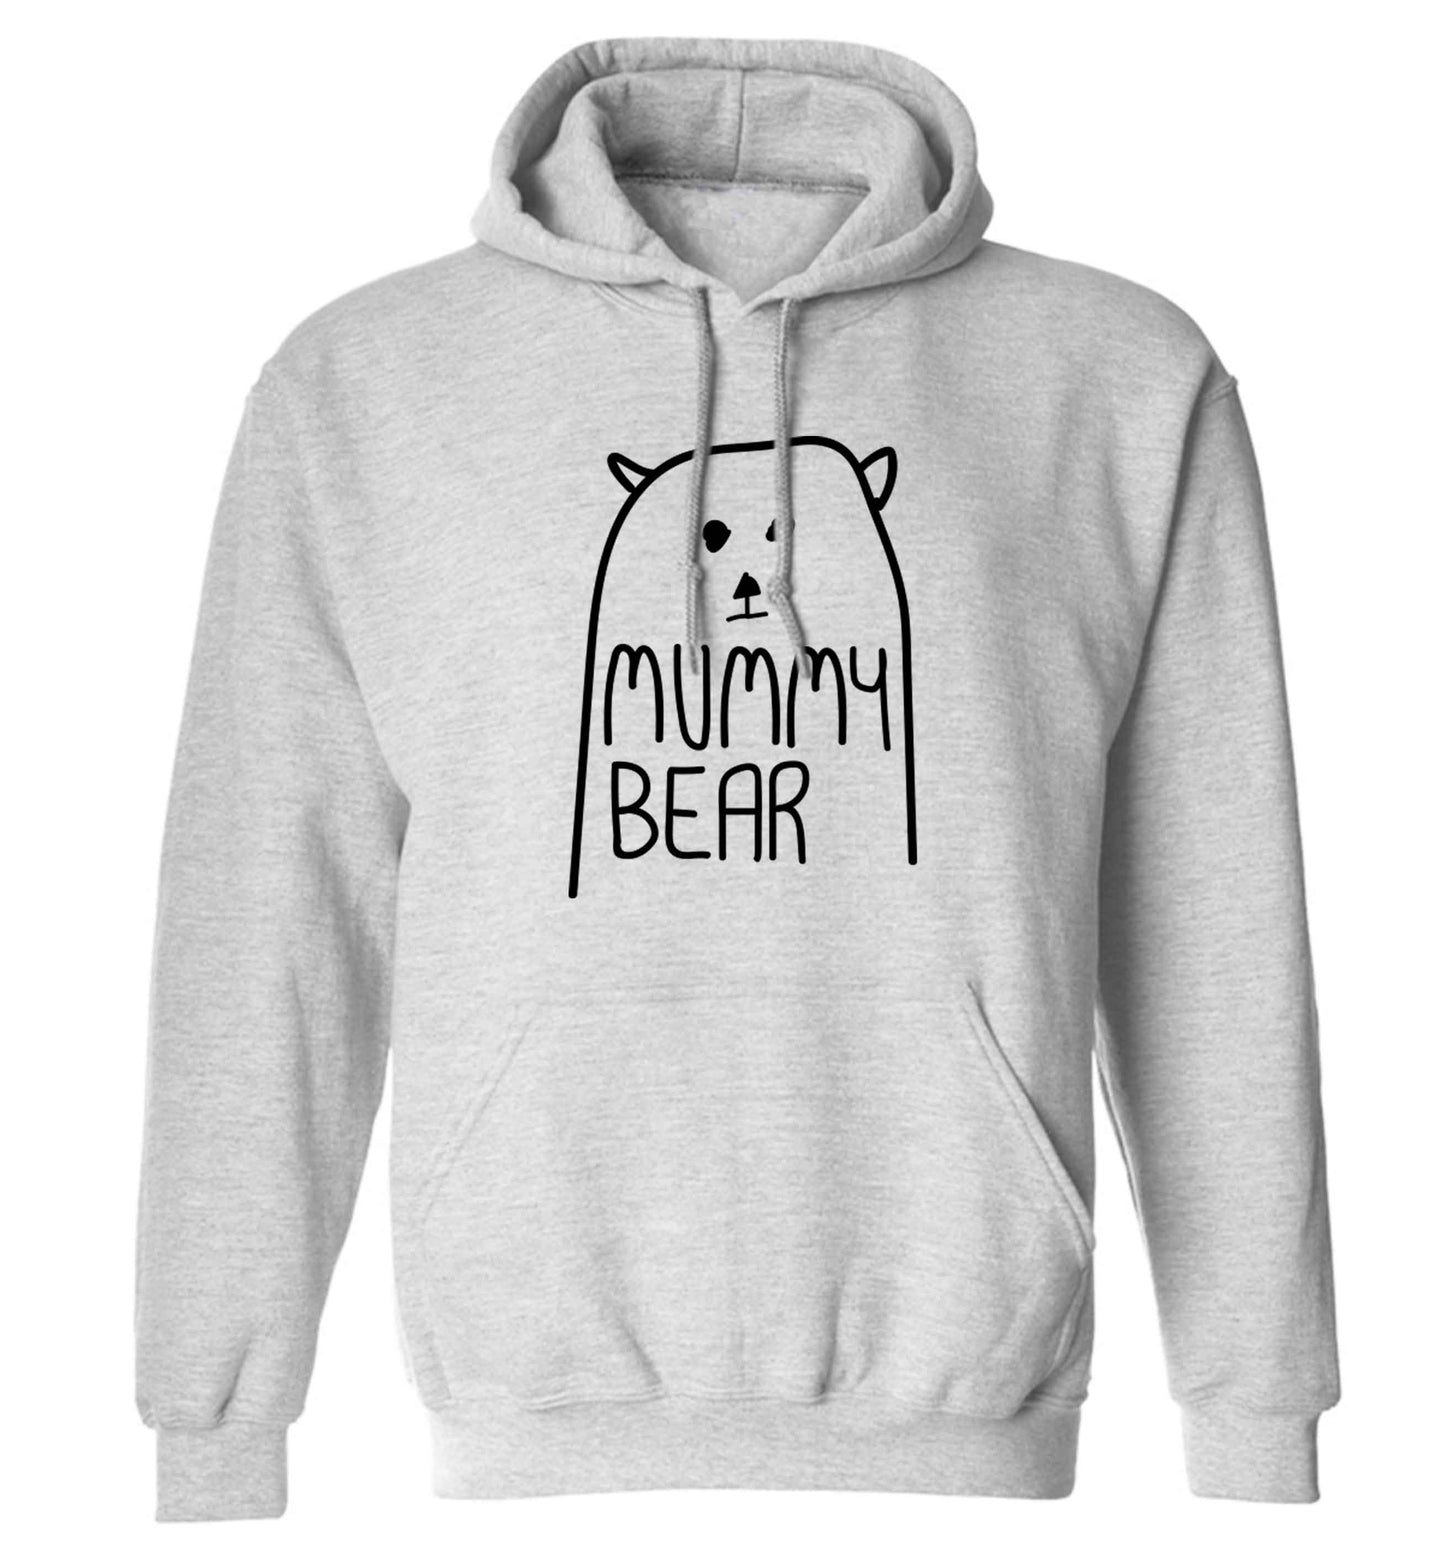 Mummy bear adults unisex grey hoodie 2XL